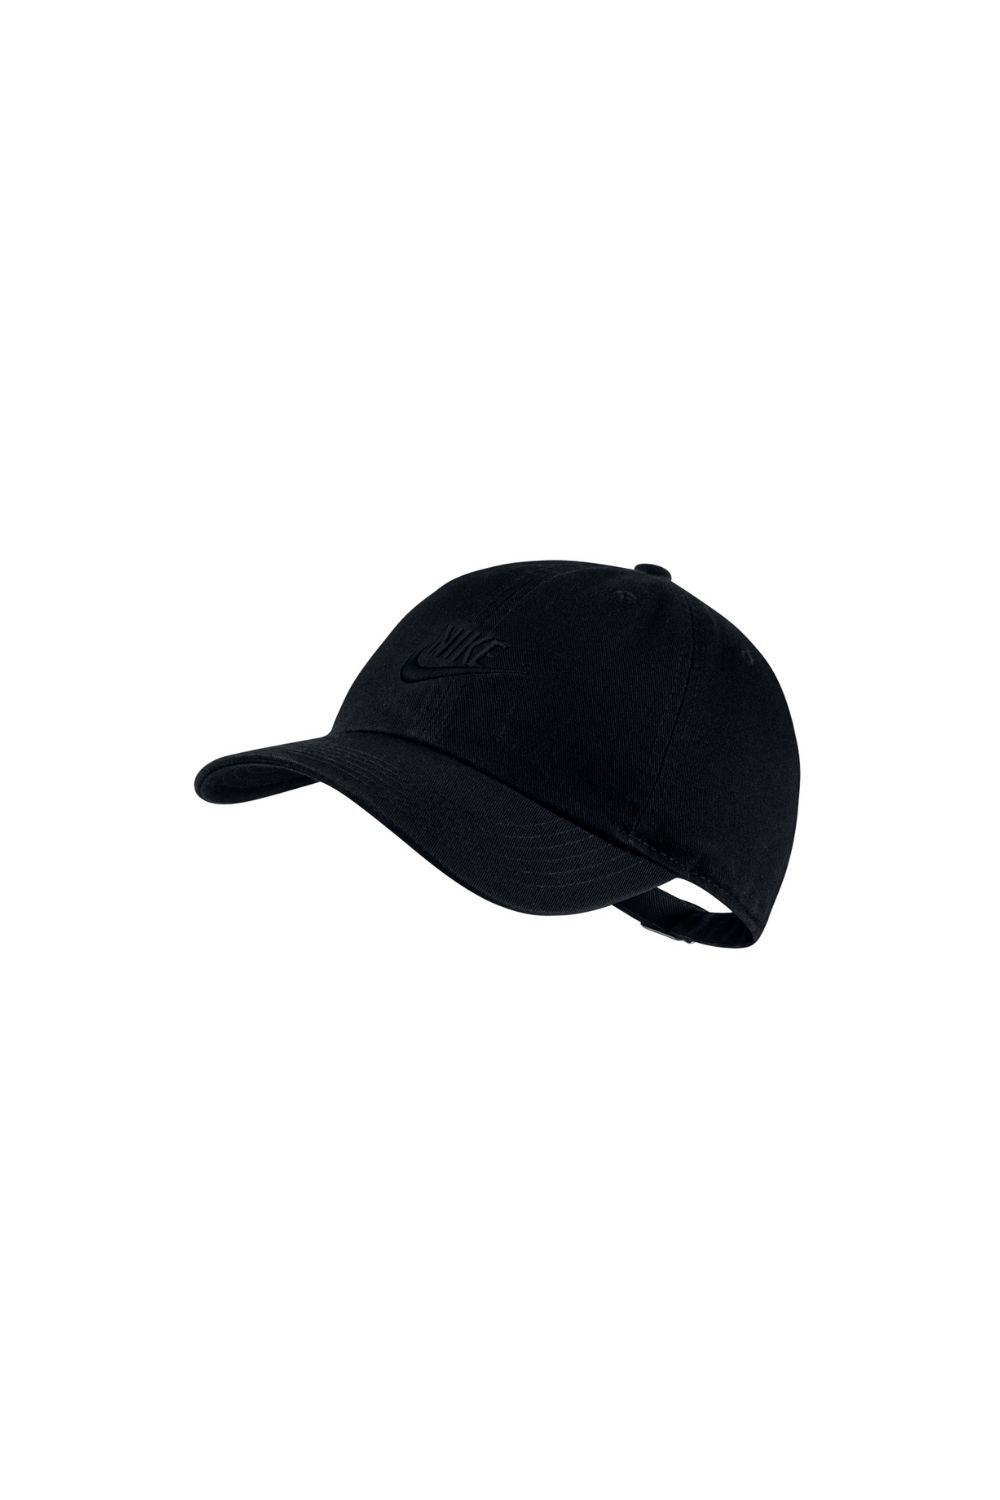 Παιδικά/Boys/Αξεσουάρ/Καπέλα NIKE - Παιδικό καπέλο NIKE H86 FUTURA μαύρο